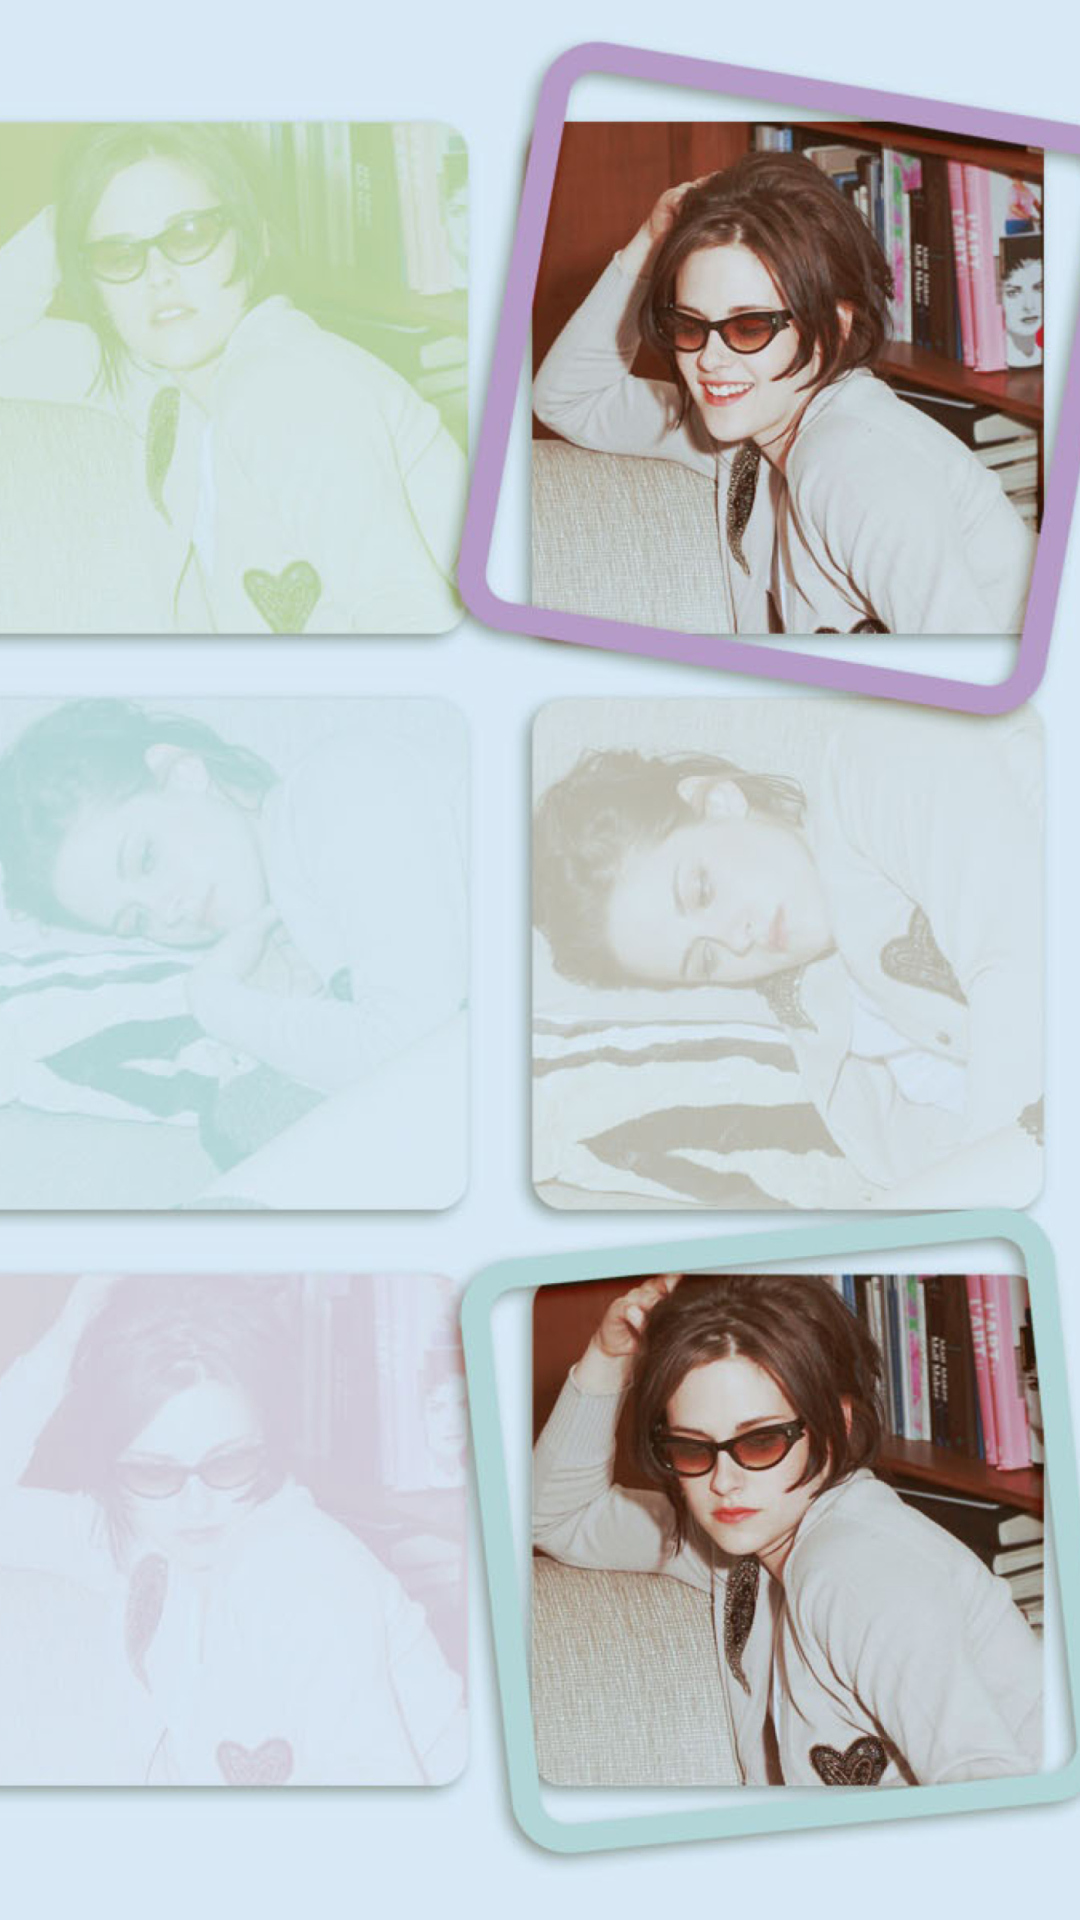 Kristen Stewart Wearing Glasses wallpaper 1080x1920